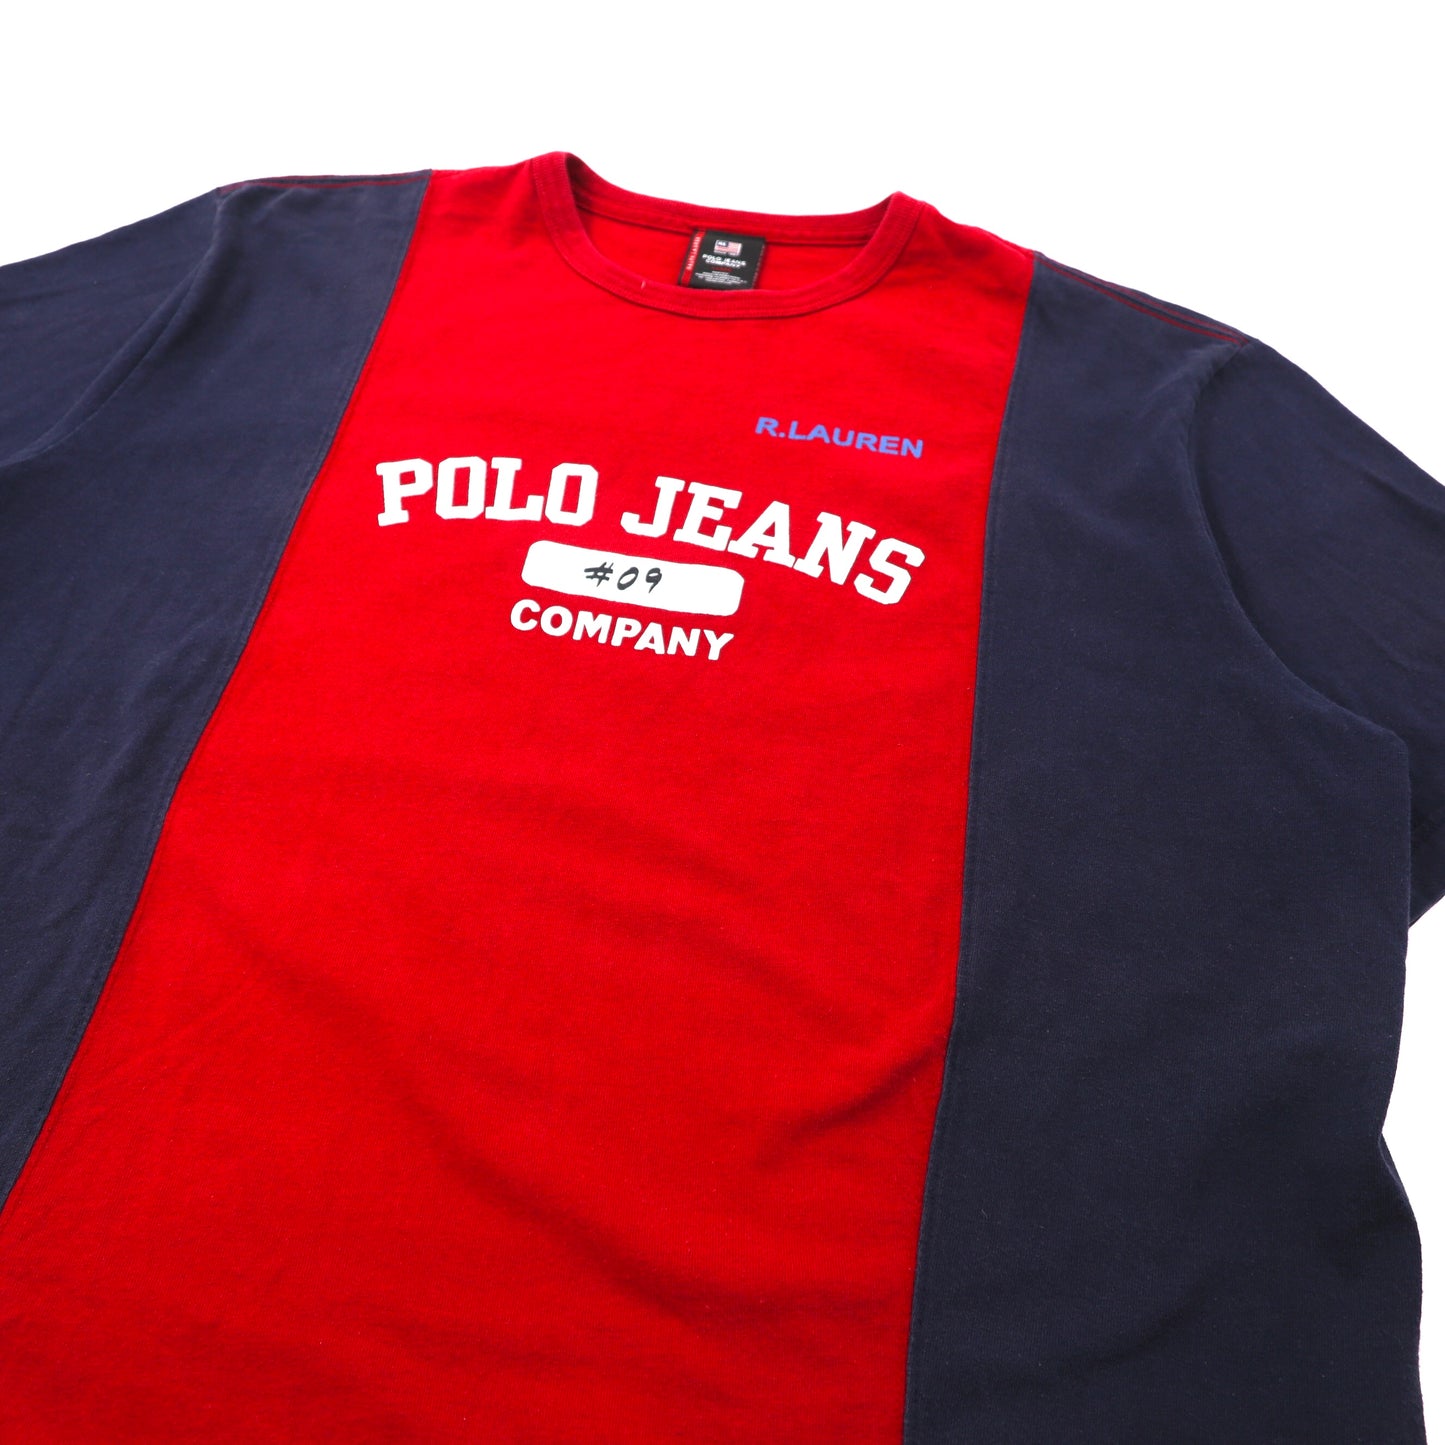 POLO JEANS COMPANY RALPH LAUREN ドッキングTシャツ L レッド ネイビー コットン ビッグサイズ ロゴプリント 90年代